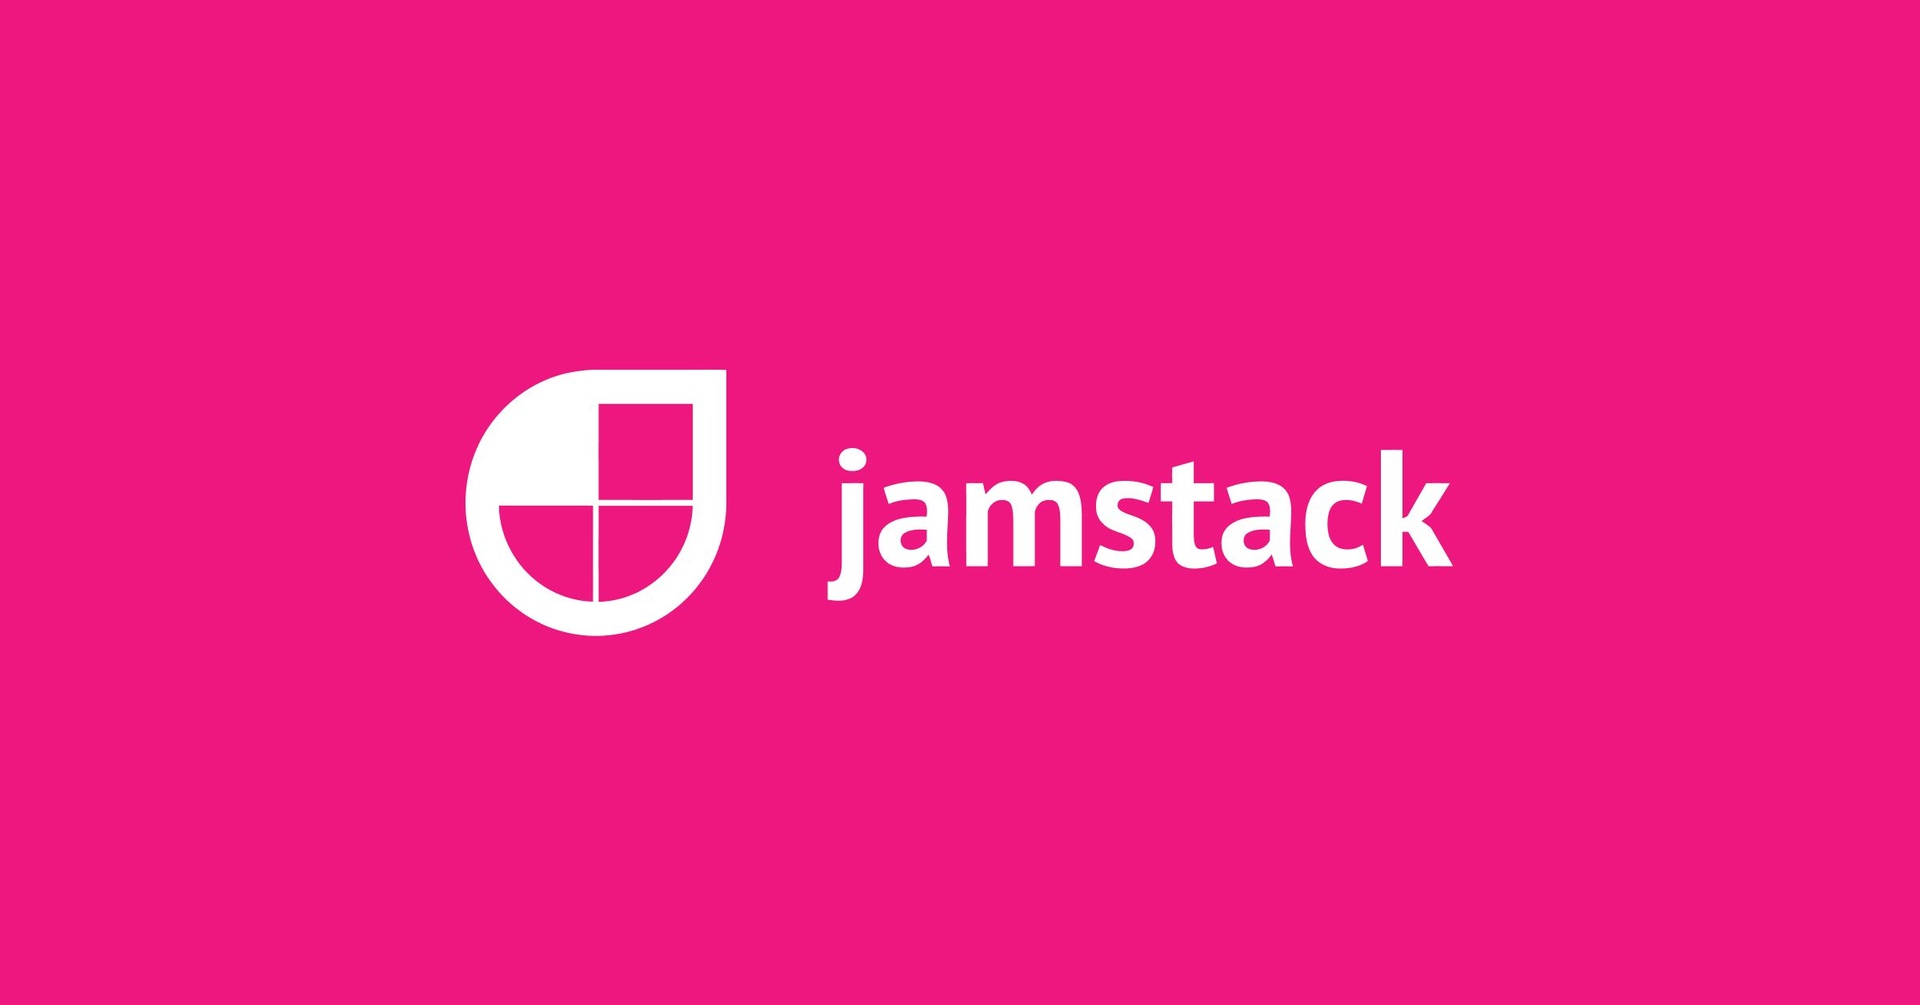 جام ستاك Jamstack تعريفه والفائدة من استخدام تقنياته